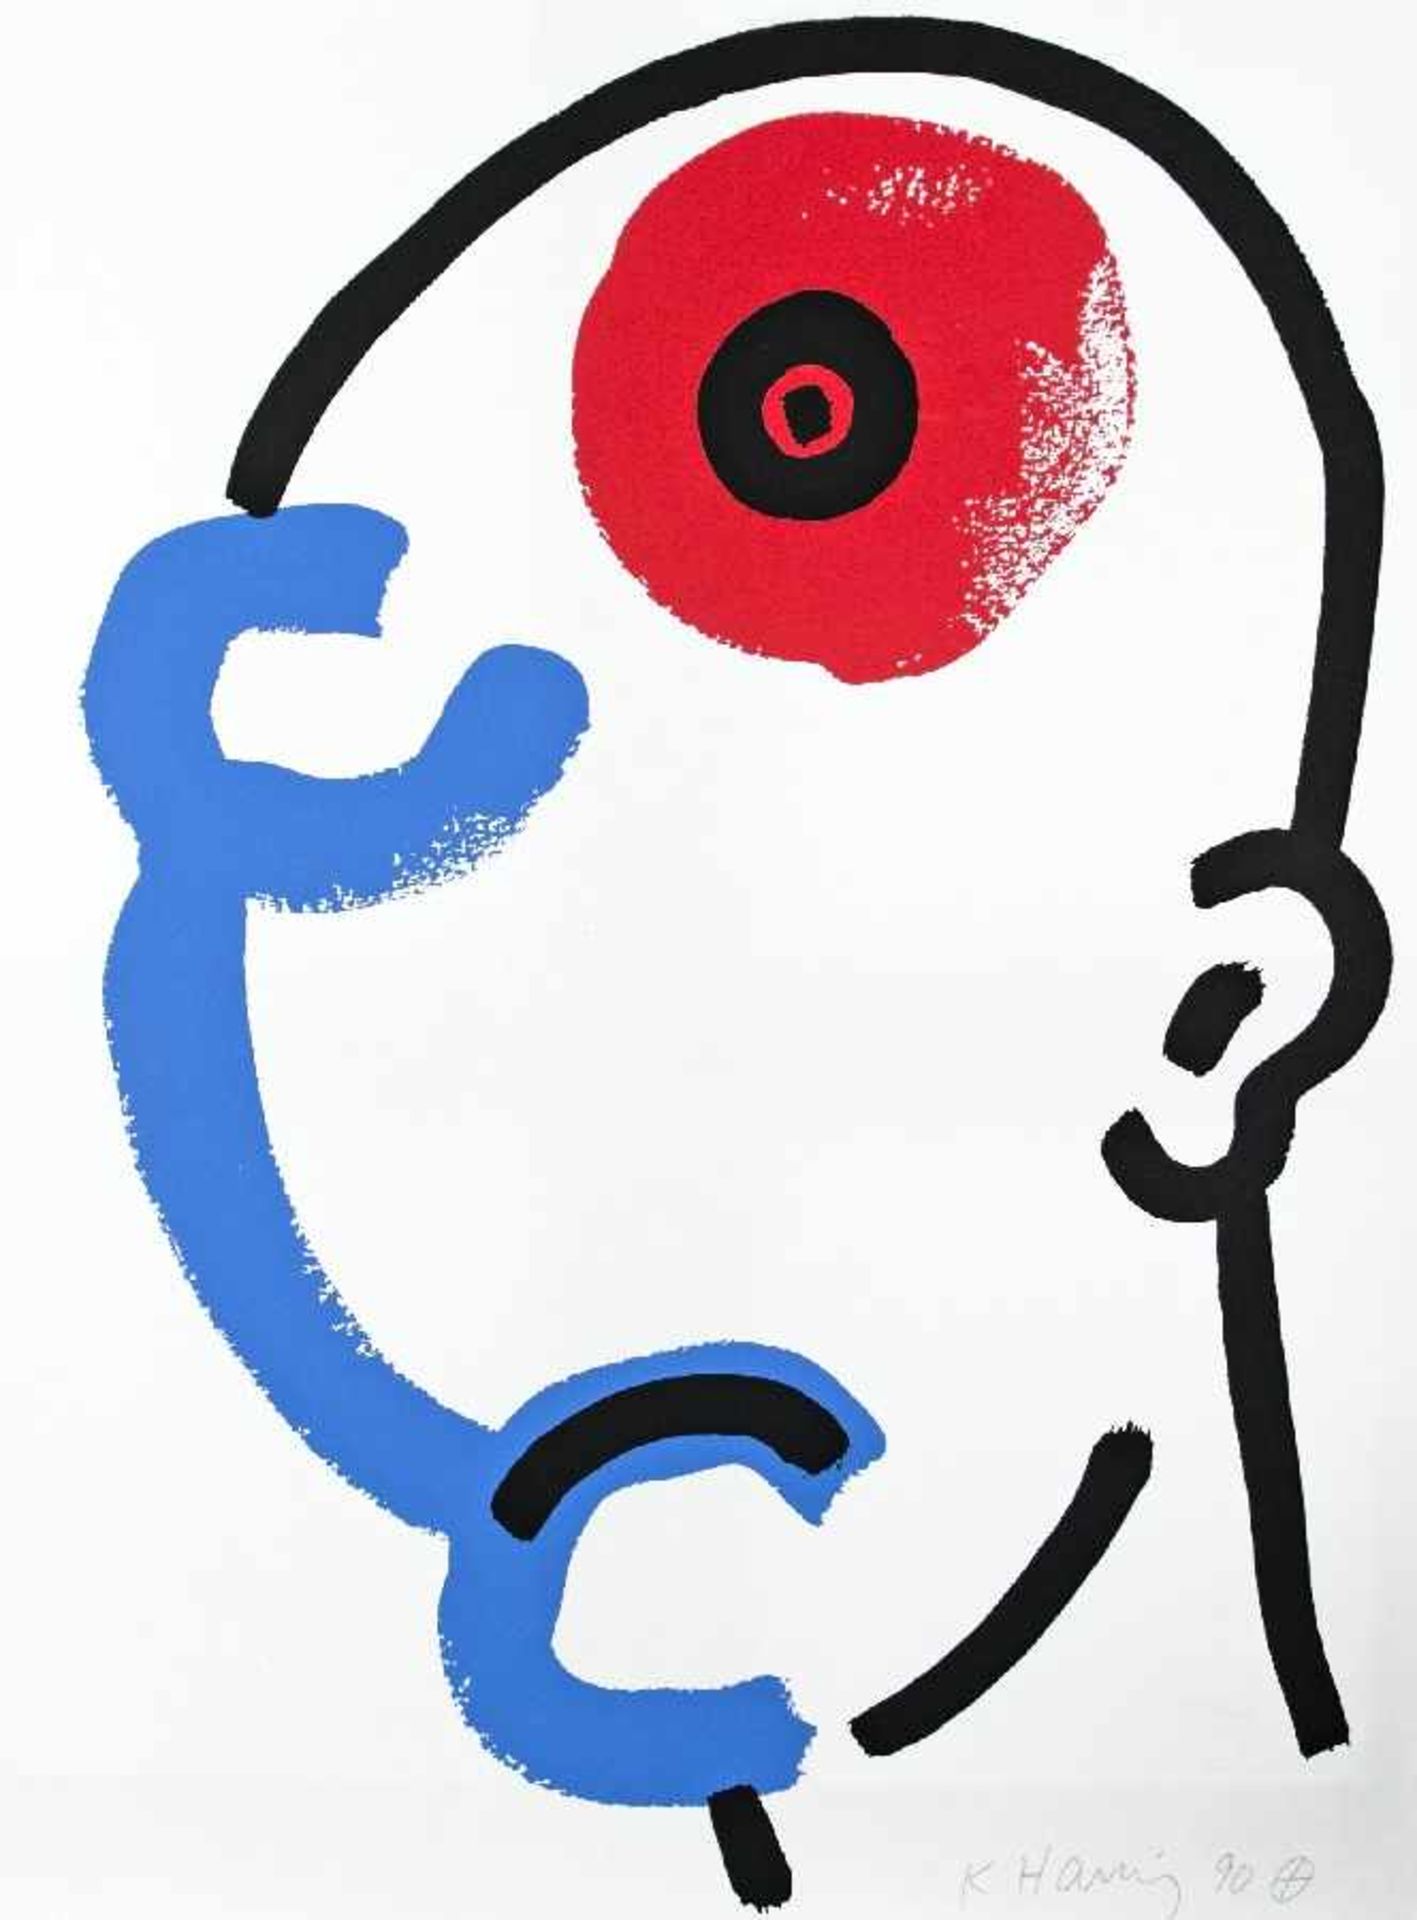 Keith Haring 1958 Kutztown - 1990 New York The story of red + blue Mappe mit Siebdrucken auf Papier; - Bild 15 aus 21